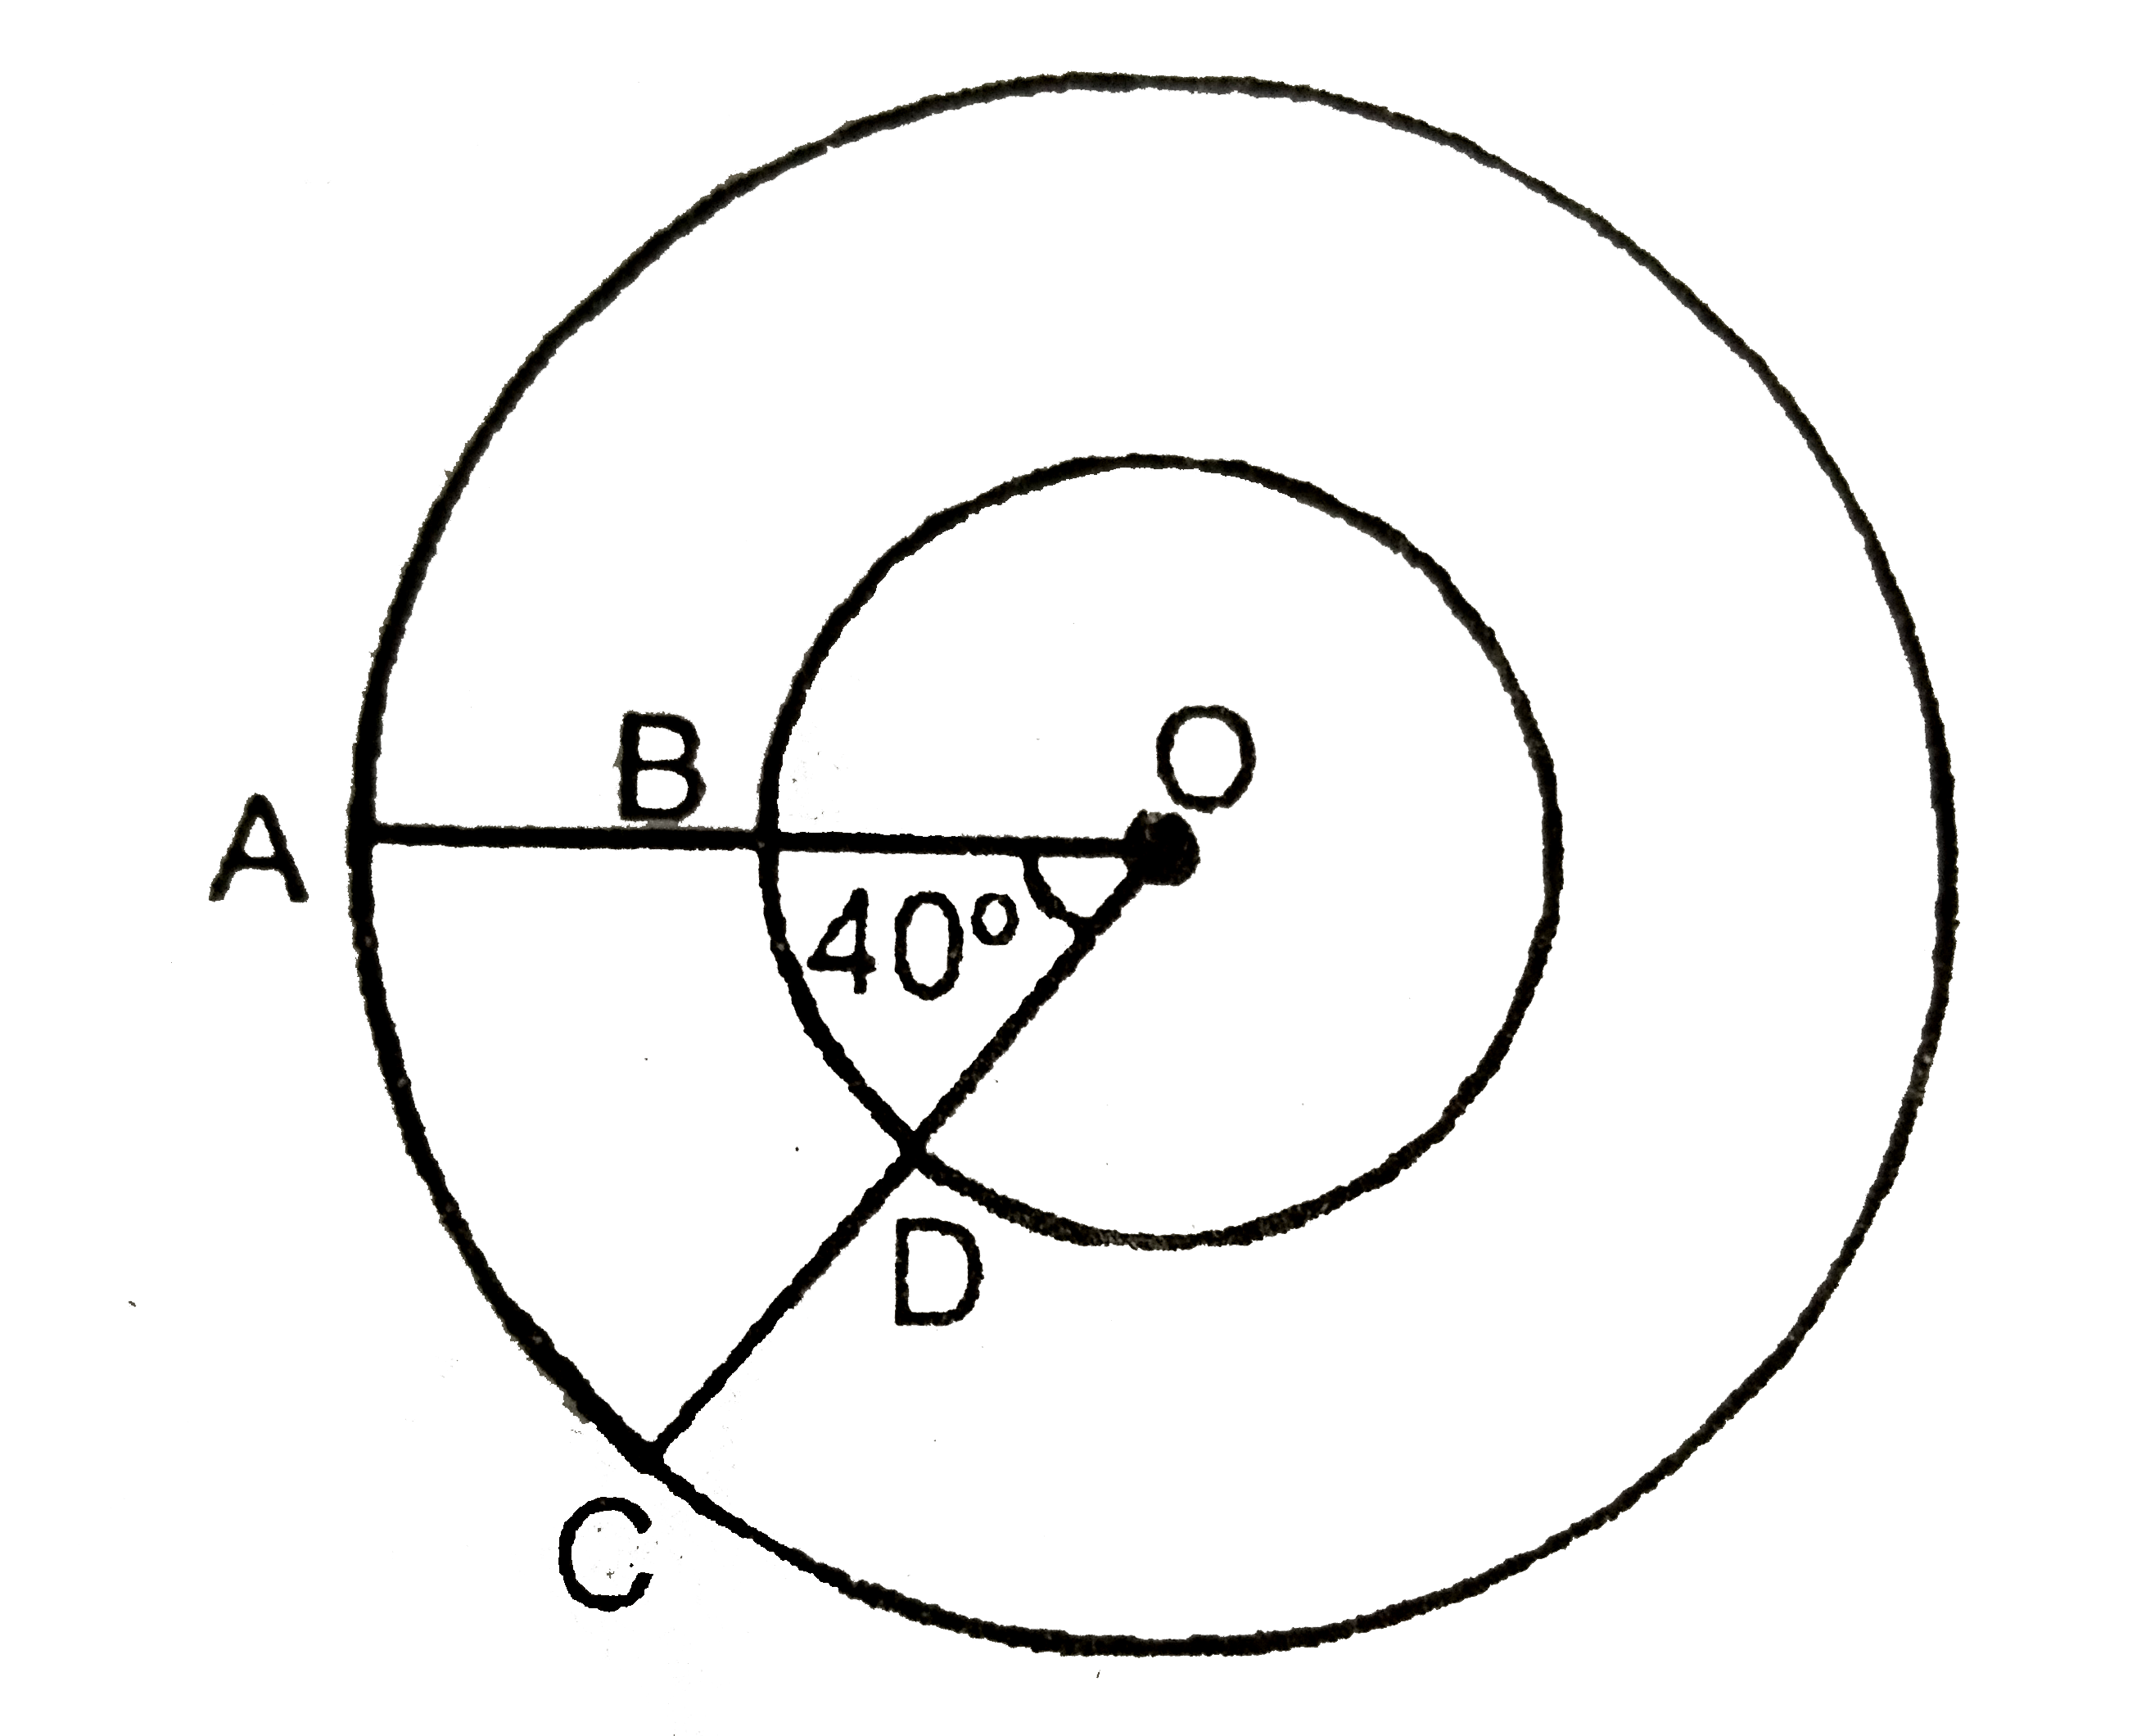 दिए गए  आकृति  में छायांकित  भाग  का  क्षेत्रफल  ज्ञात  कीजिये यदि O  केंद्र वाले  दोनों  सकेंद्रिय  वृतों   की  त्रिज्याएँ क्रमशः   7cm      और    14 cm  है तथा      angle AOC =  40 ^@  है |